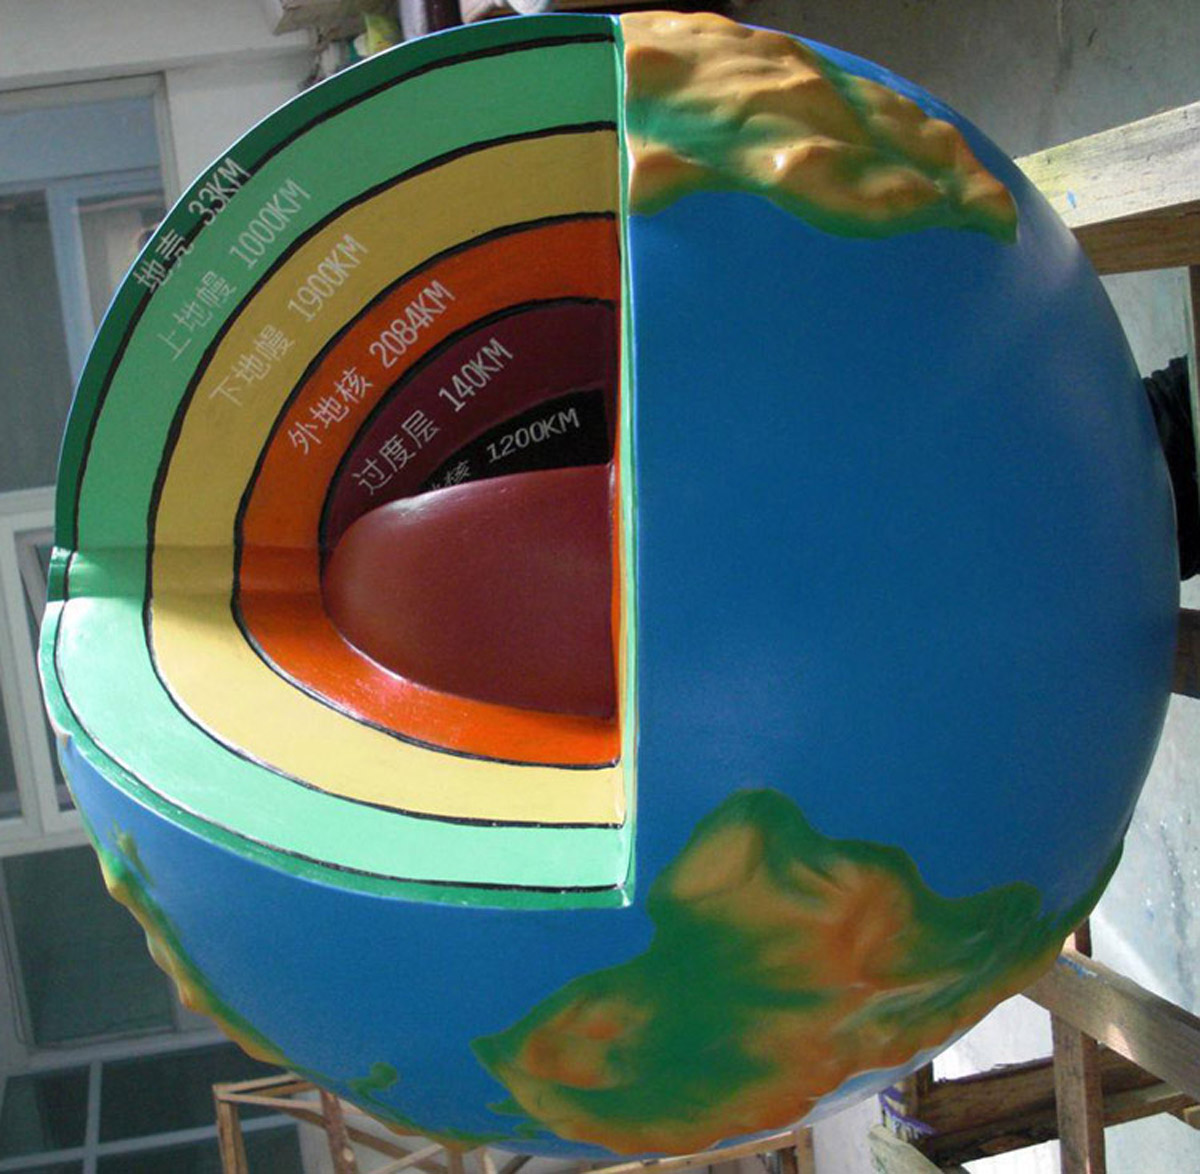 通州区展览展示地球内部模型